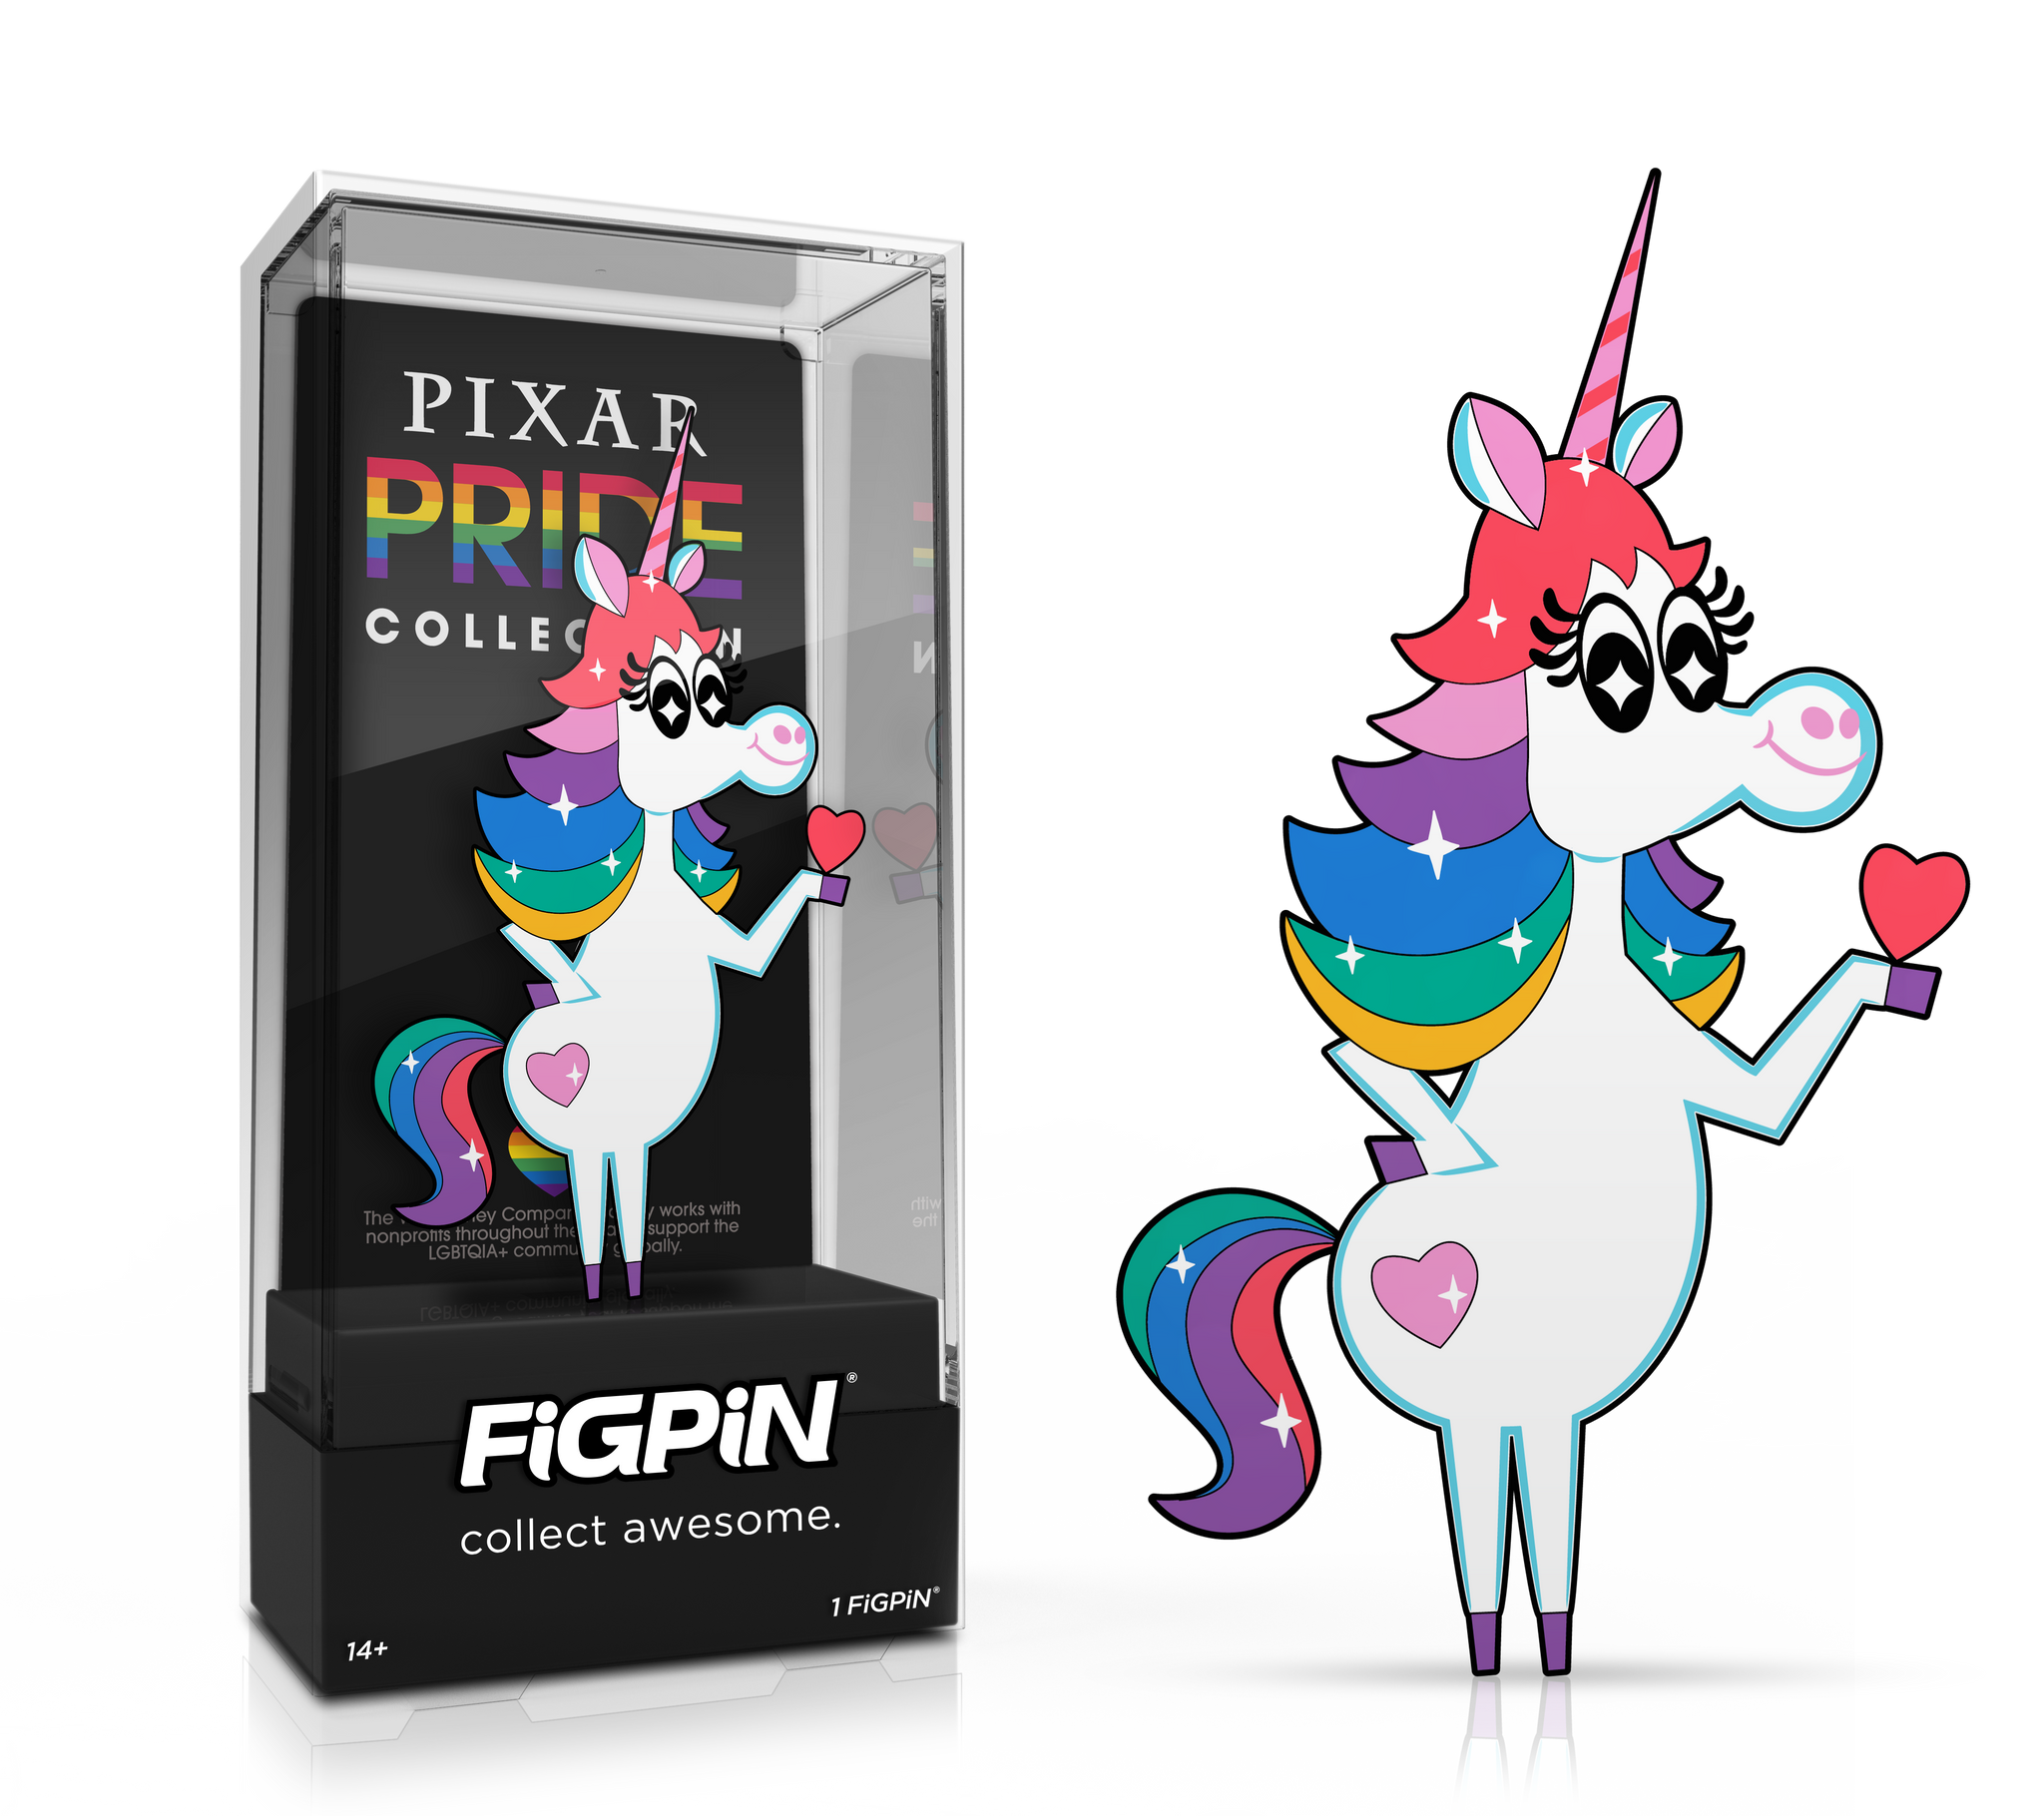 figpin.com